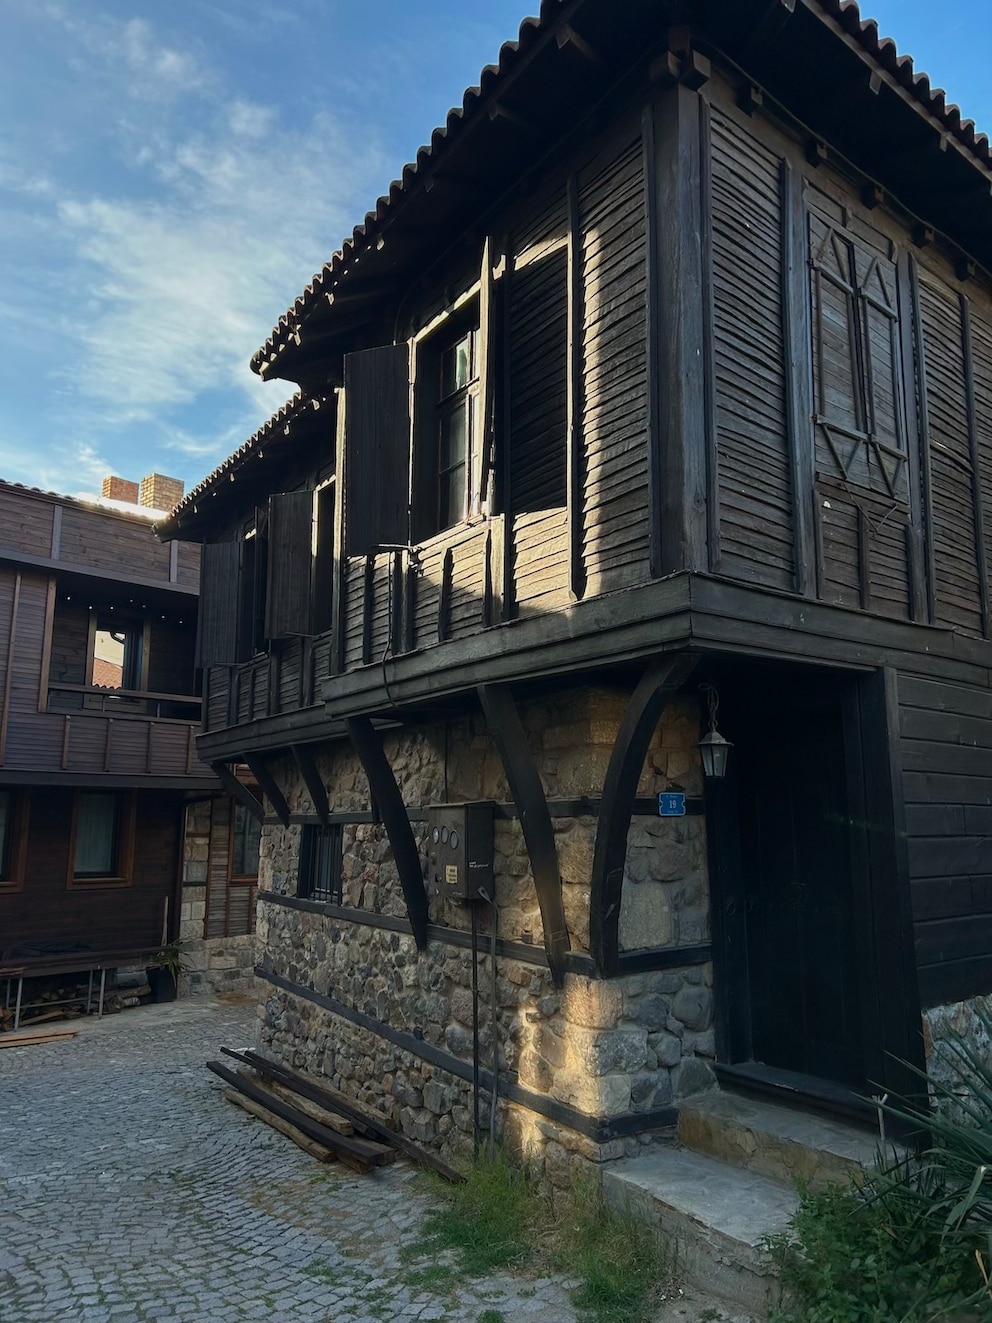 Die für Nessebar typischen Häuser mit steinernen Erdgeschossen und oberen Stockwerken aus Holz sind Teil des UNESCO Weltkulturerbes